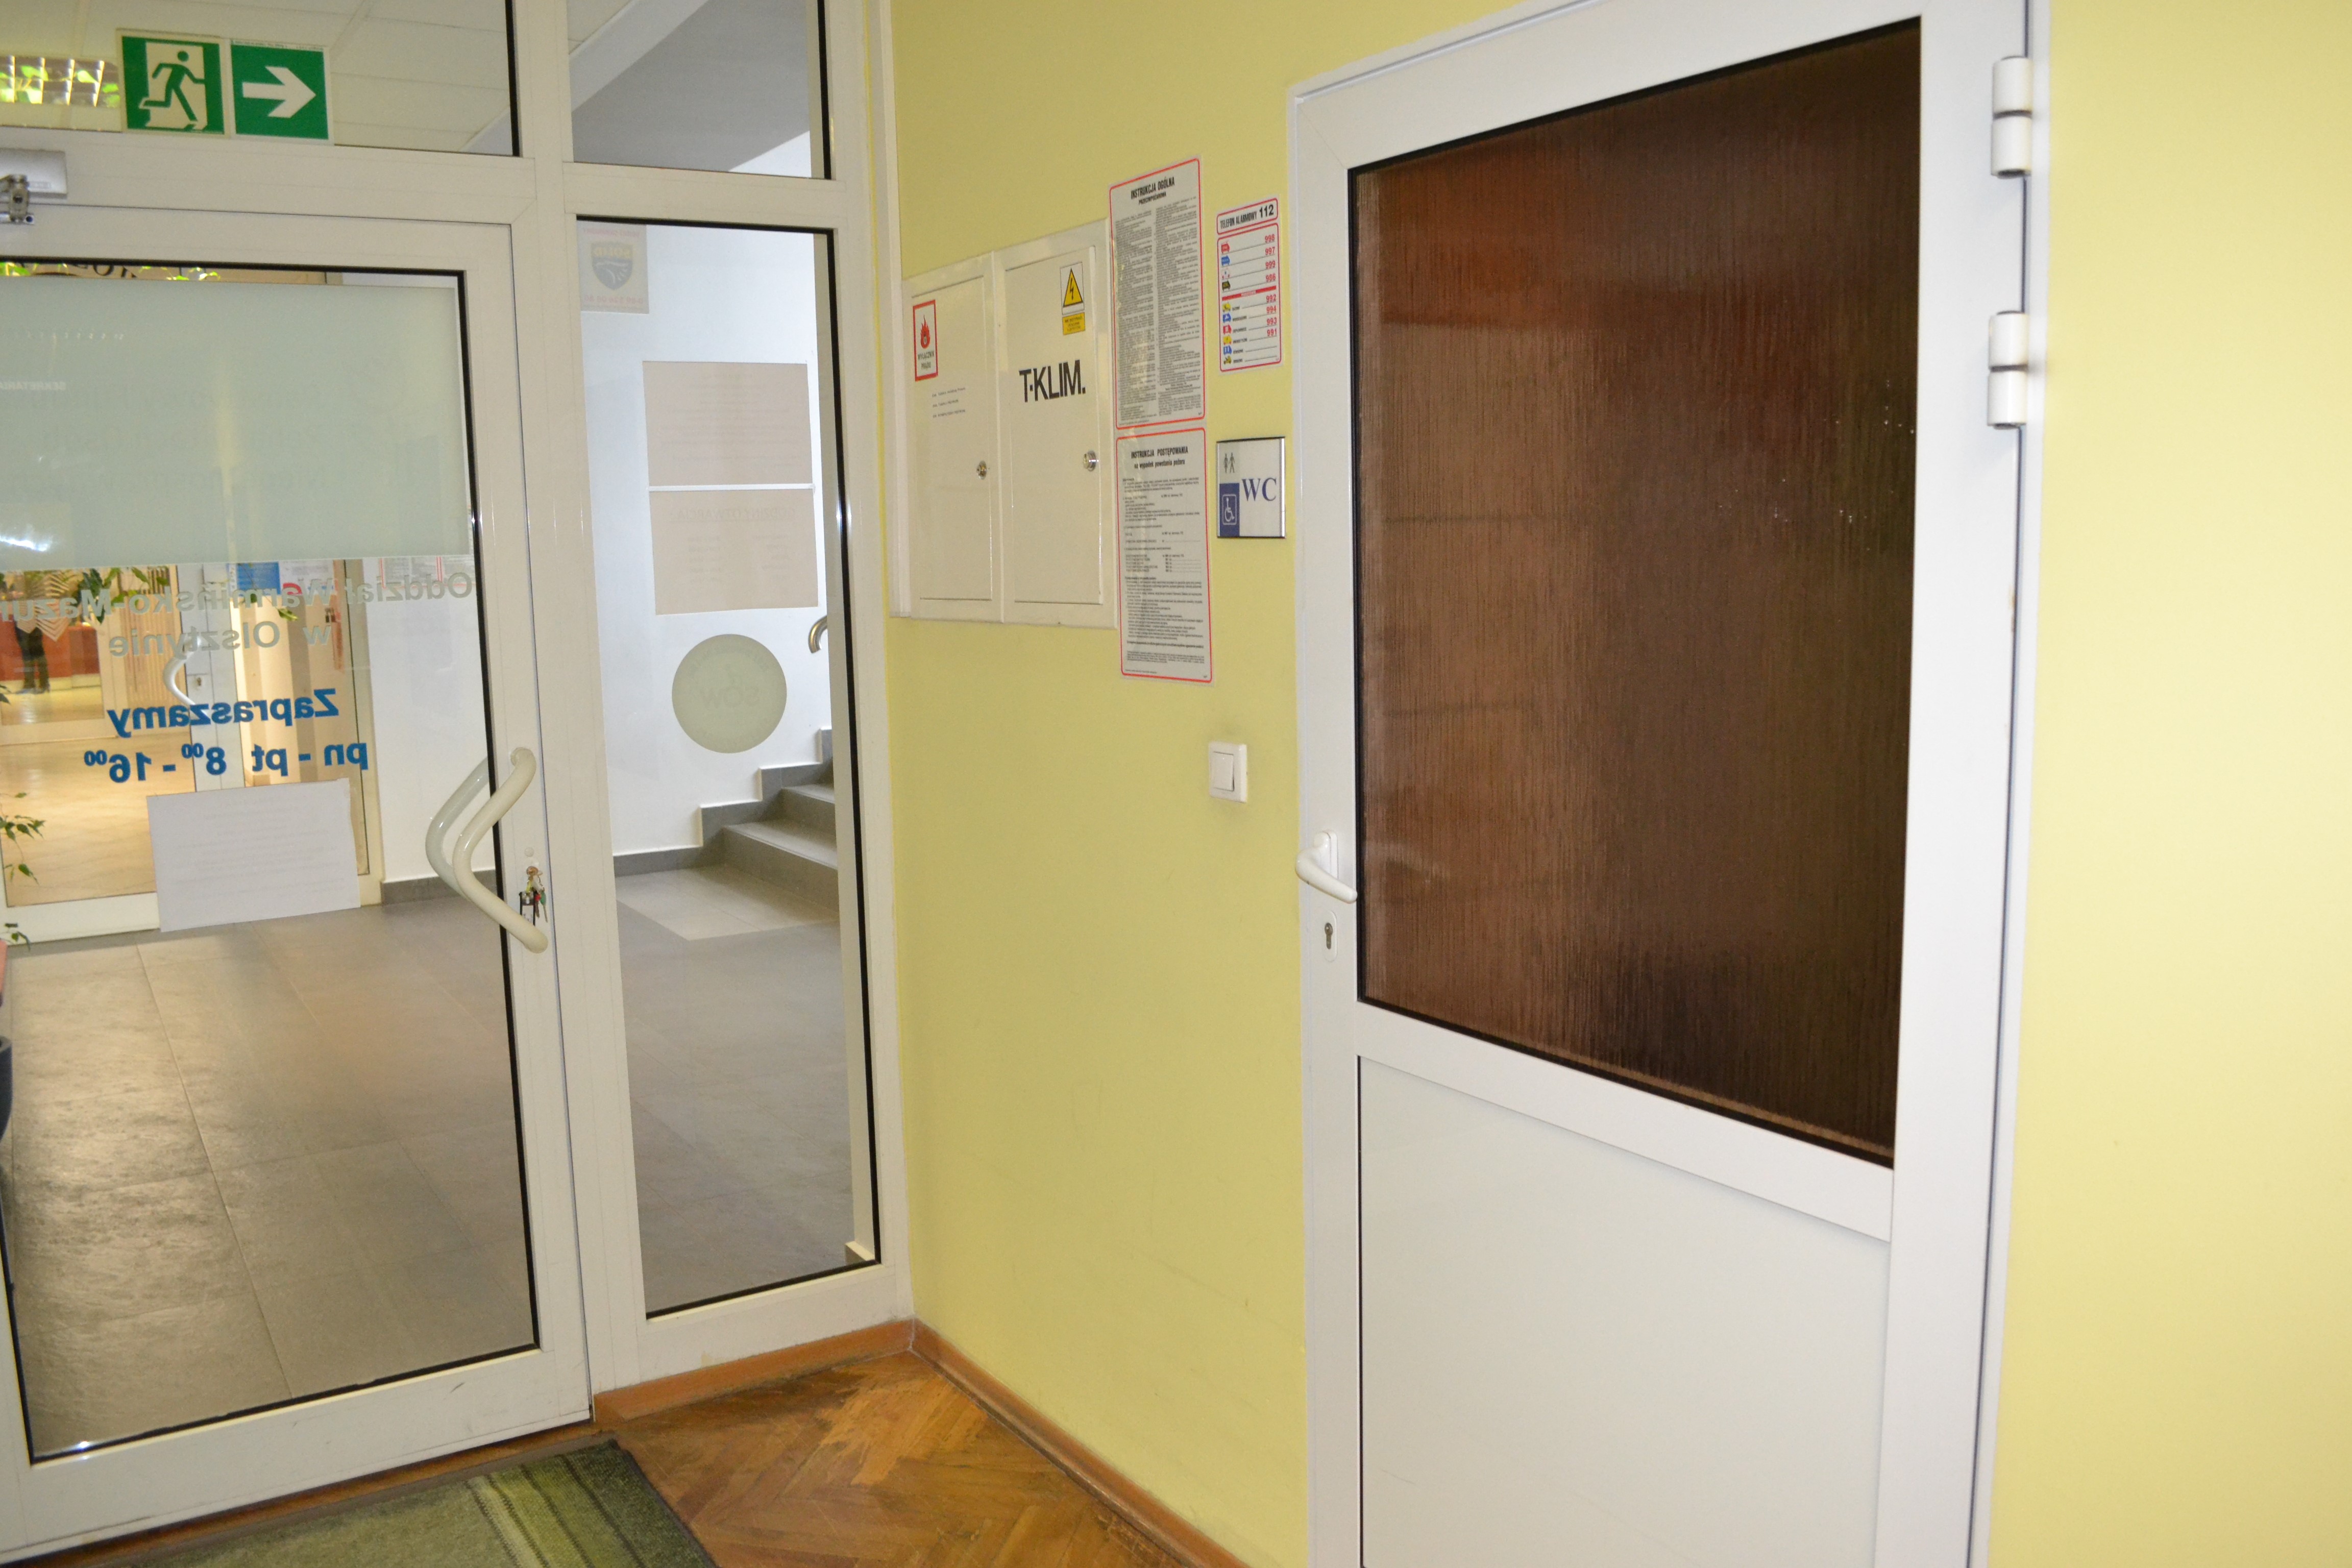 Widok na wejście do toalety i wejście do Oddziału PFRON od strony korytarza Oddziału. Na ścianie po prawej stronie widoczne skrzynki elektryczne oraz instrukcje przeciwpożarowe.